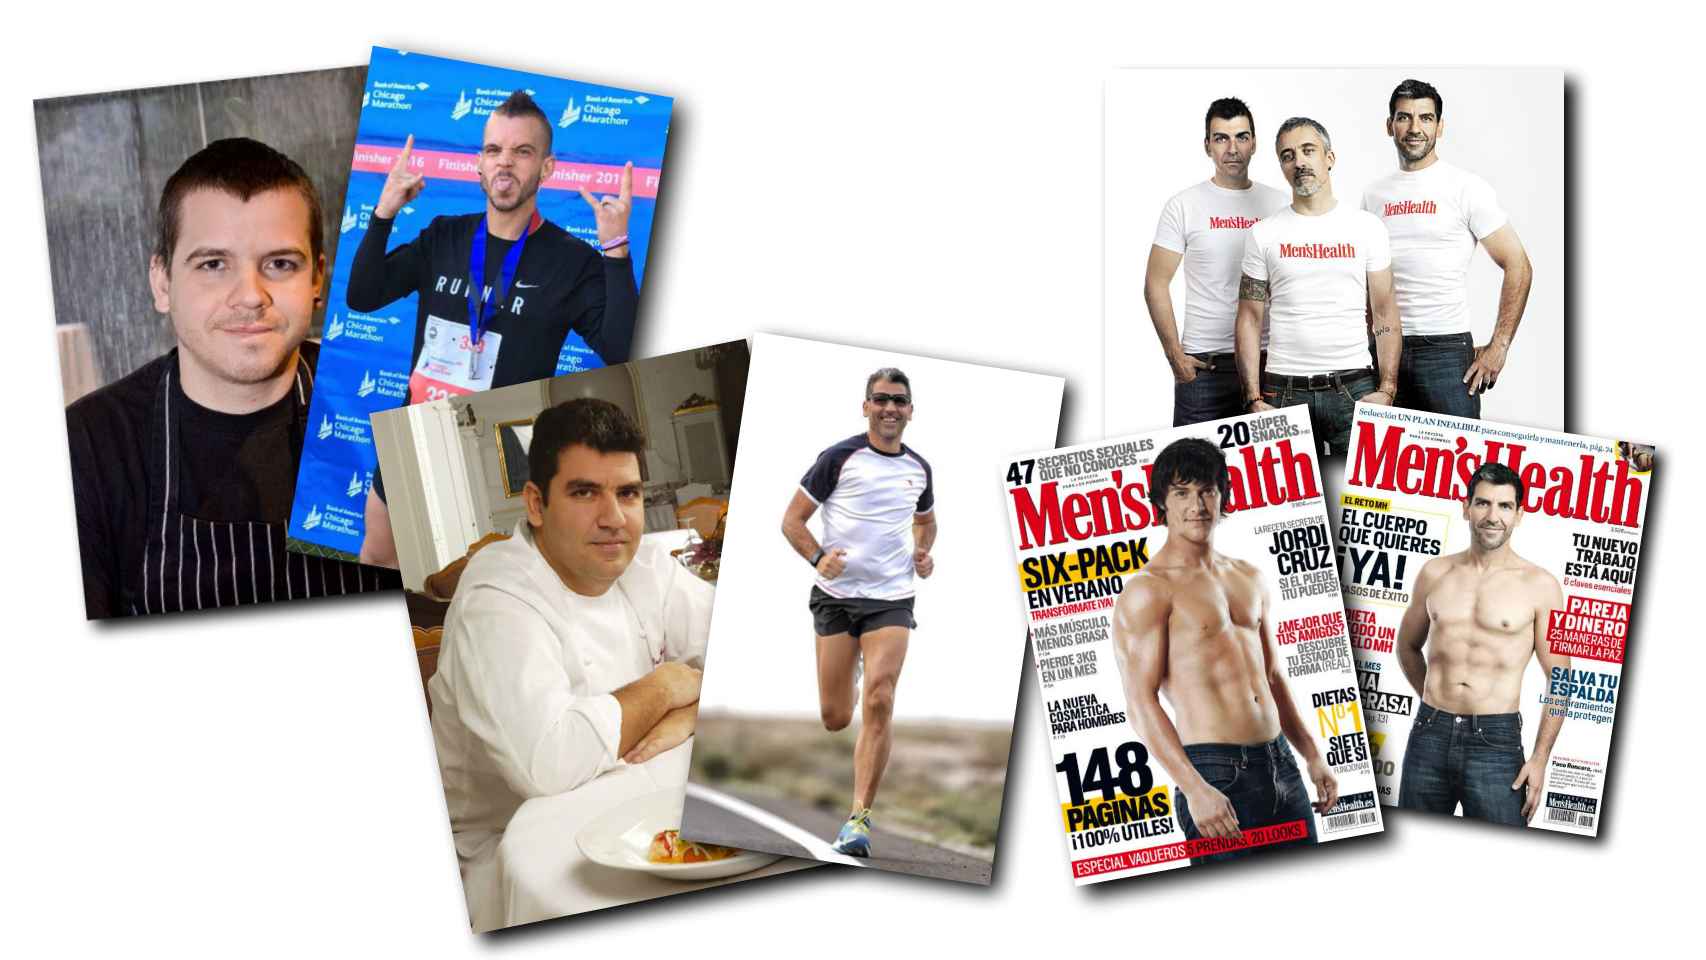 David Muñoz, Paco Roncero, Jordi Cruz o Sergi Arola, son algunos de los chef que han cambiado sus cuerpos gracias al deporte.